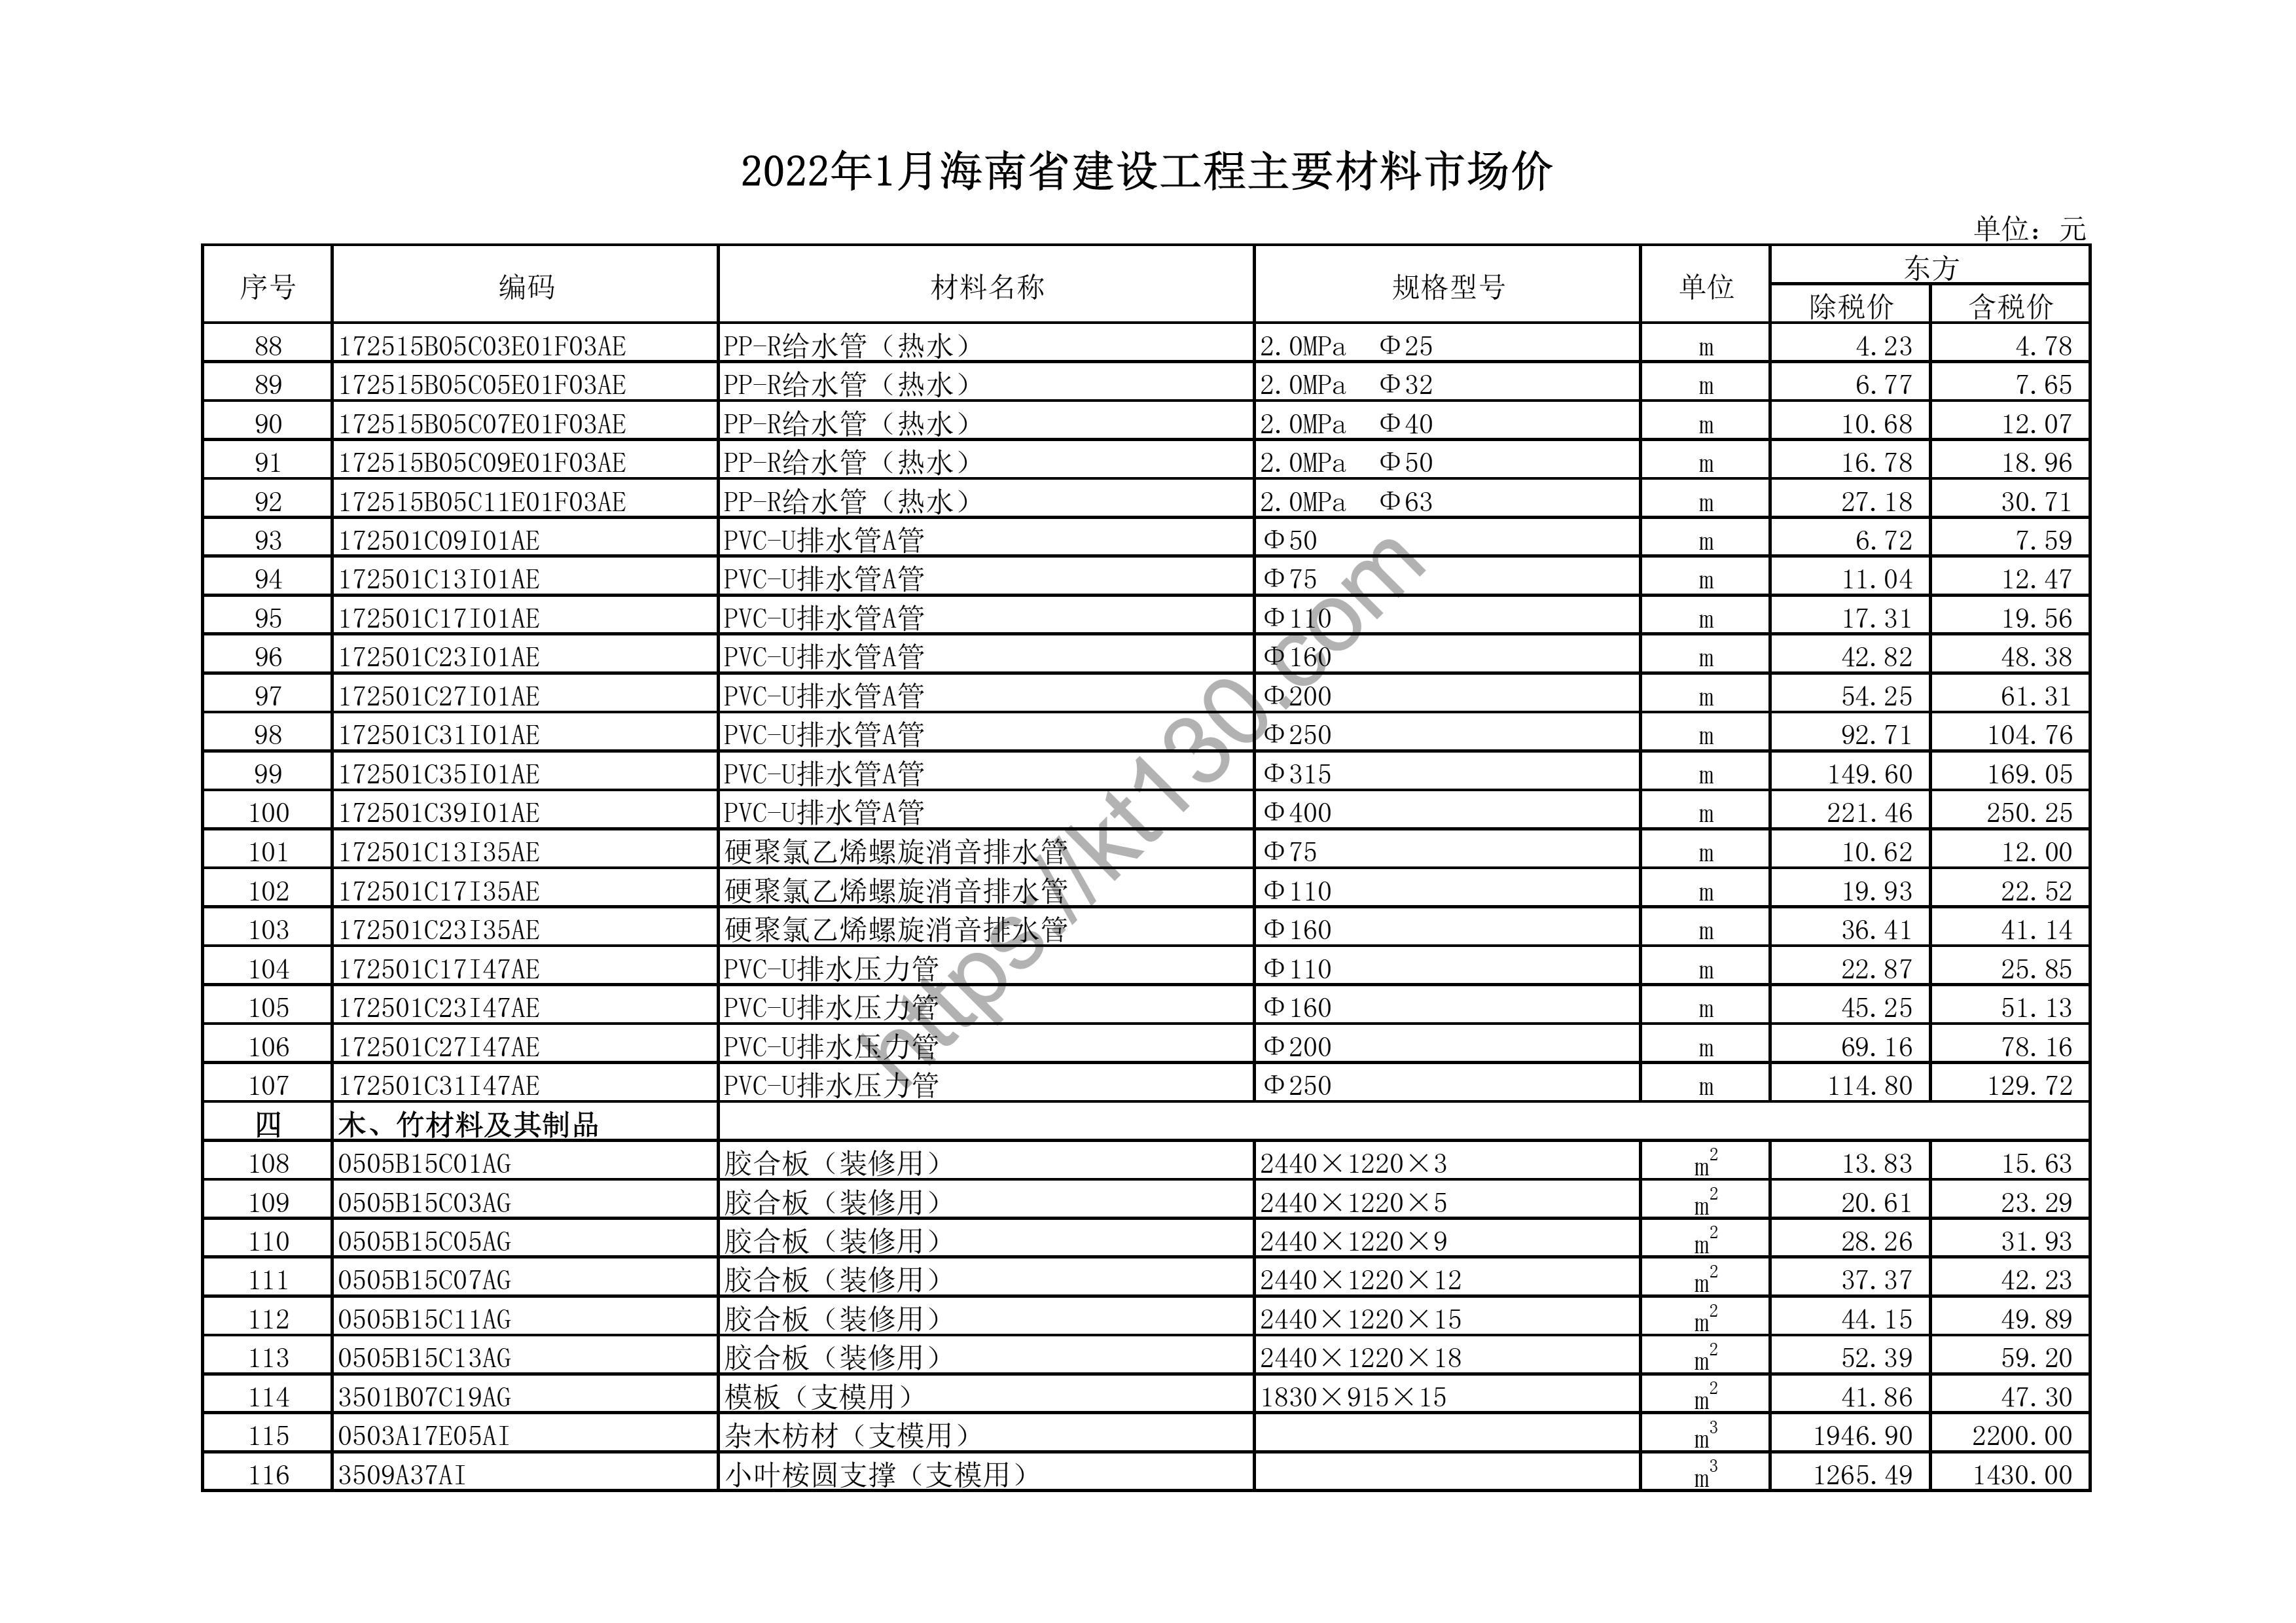 海南省2022年1月建筑材料价_排水压力管_43750